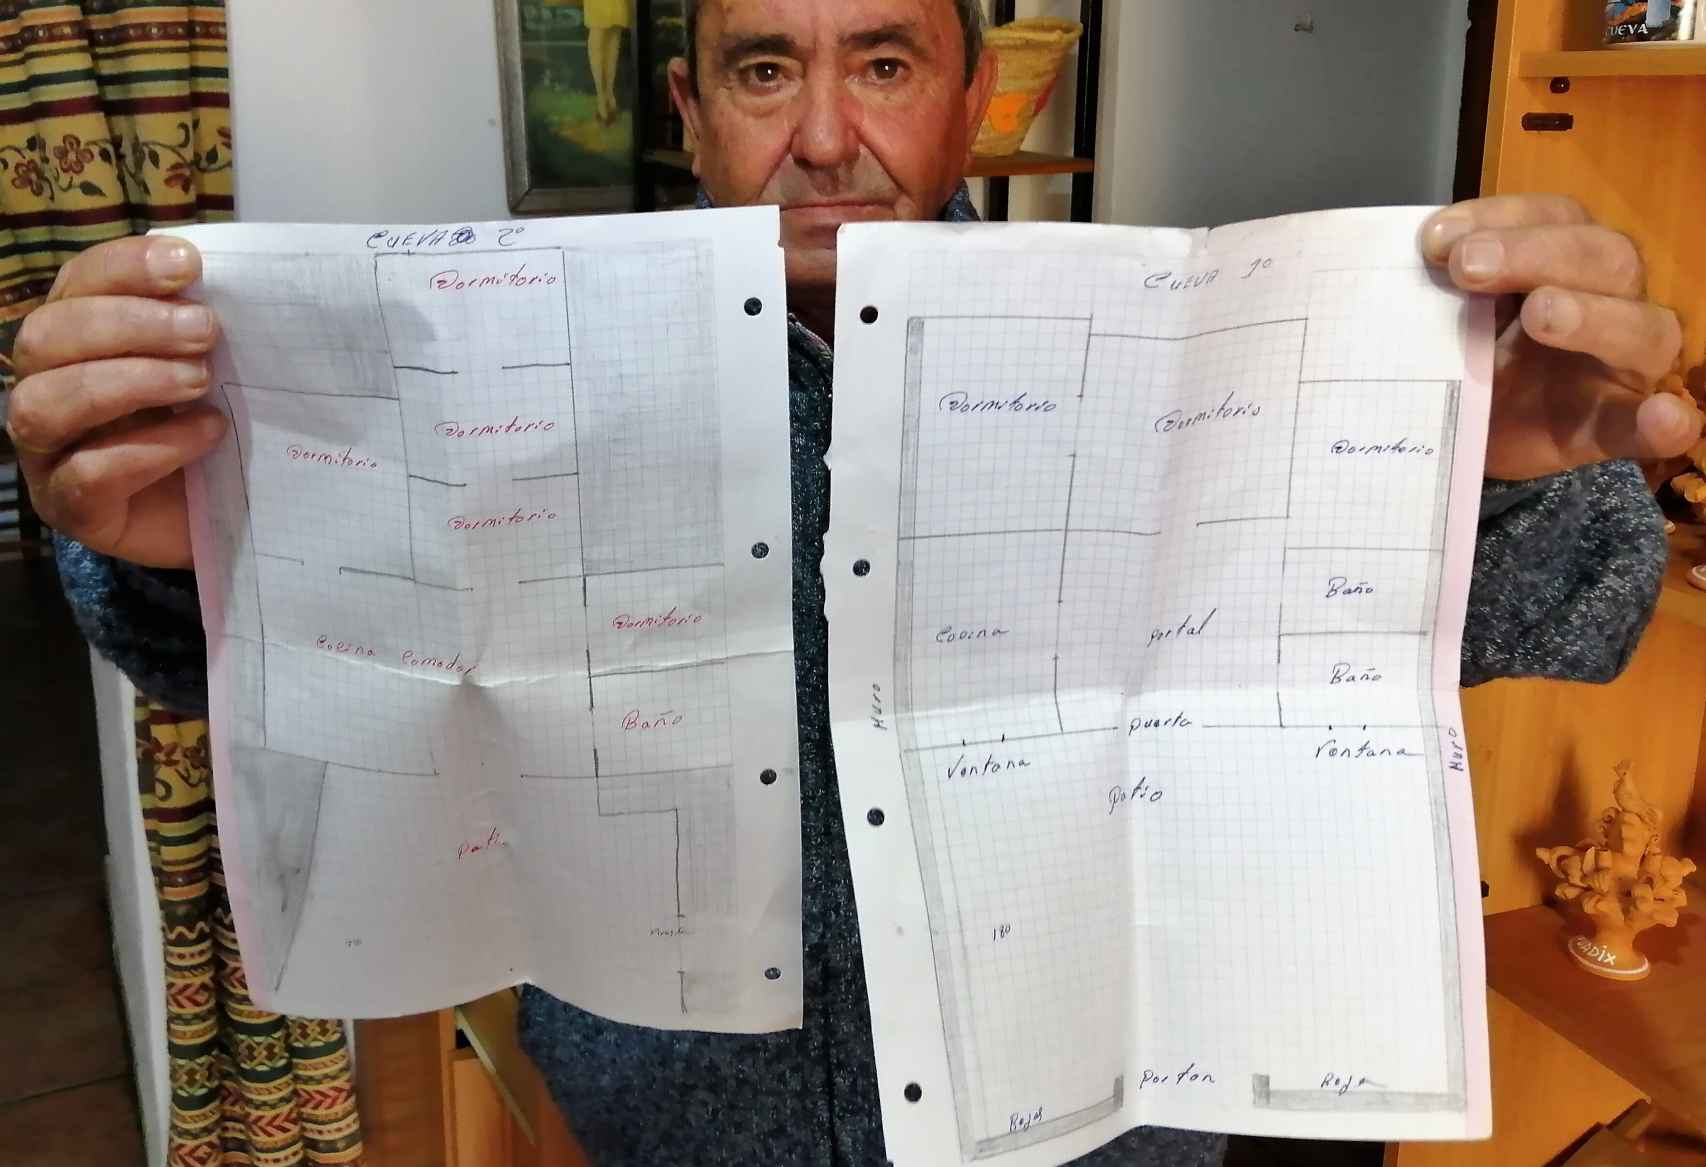 Los planos de las casas cueva que vende José Ruiz, con la reforma que él propone al comprador.